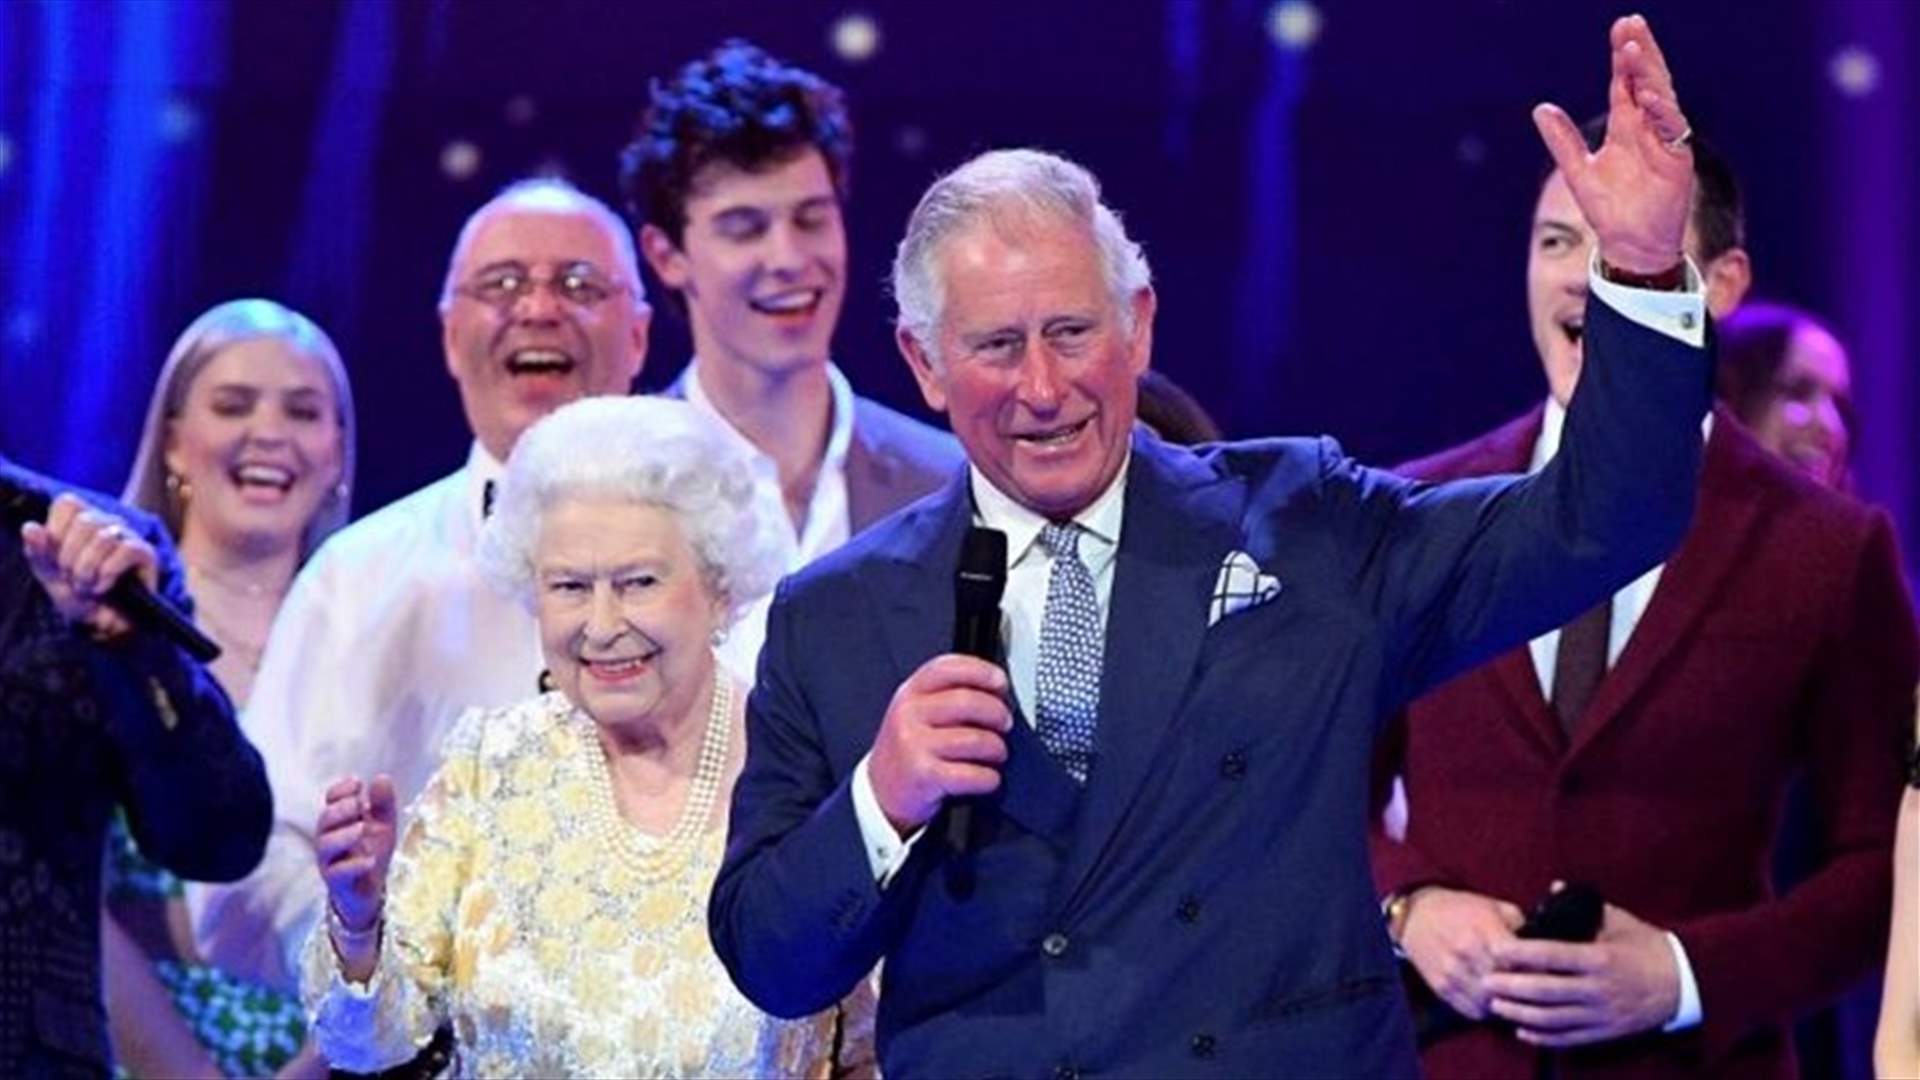 بالفيديو – الأمير تشارلز يرحب بوالدته بعبارة &quot;ماما&quot;... ردّة فعل الملكة إليزابيث مضحكة جداً!